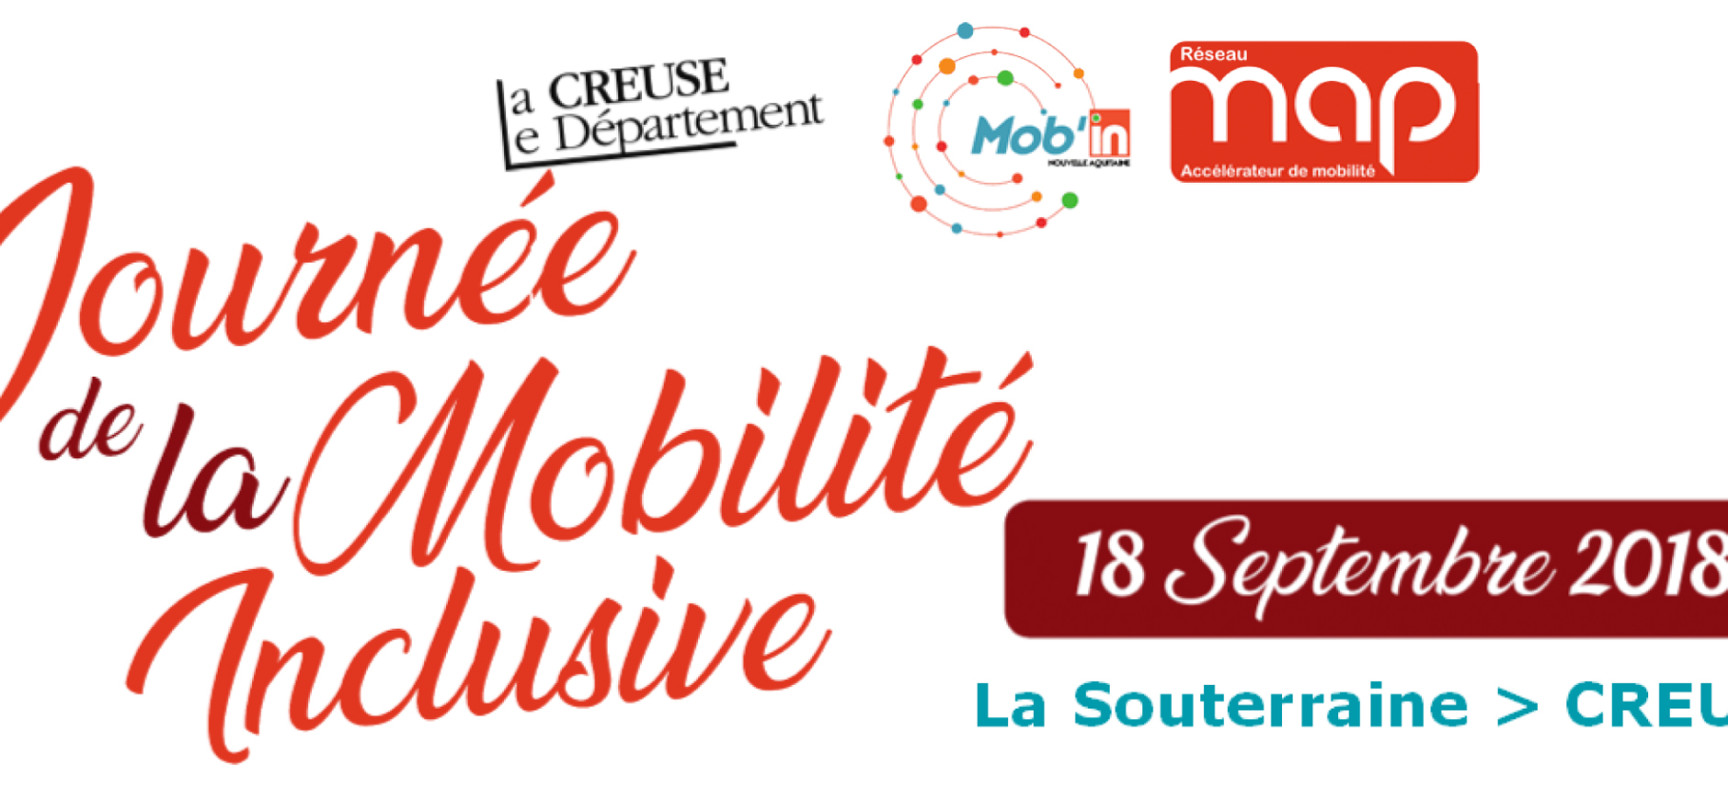 Journée de la mobilité inclusive #LaSouterraine